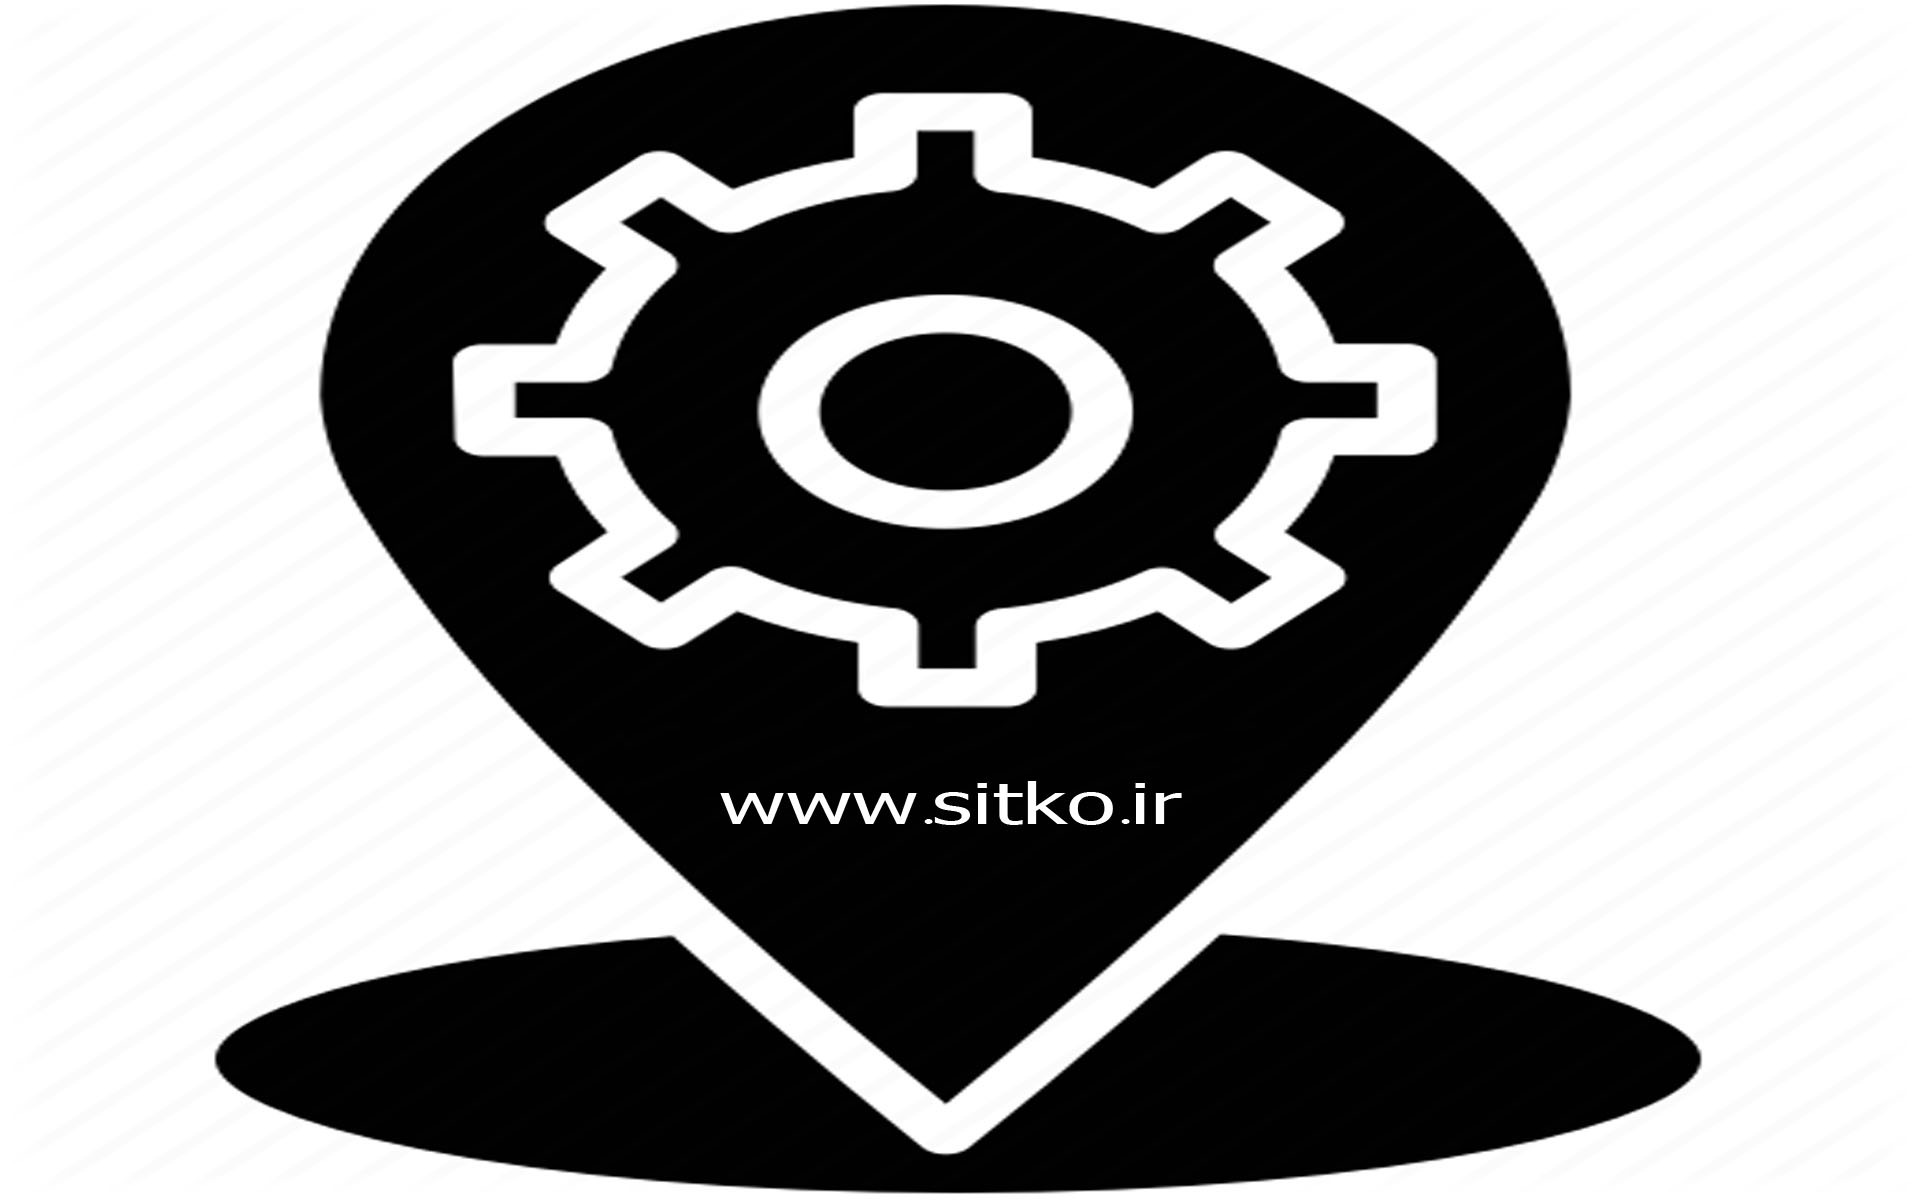 sitko_brand_gps_tracker